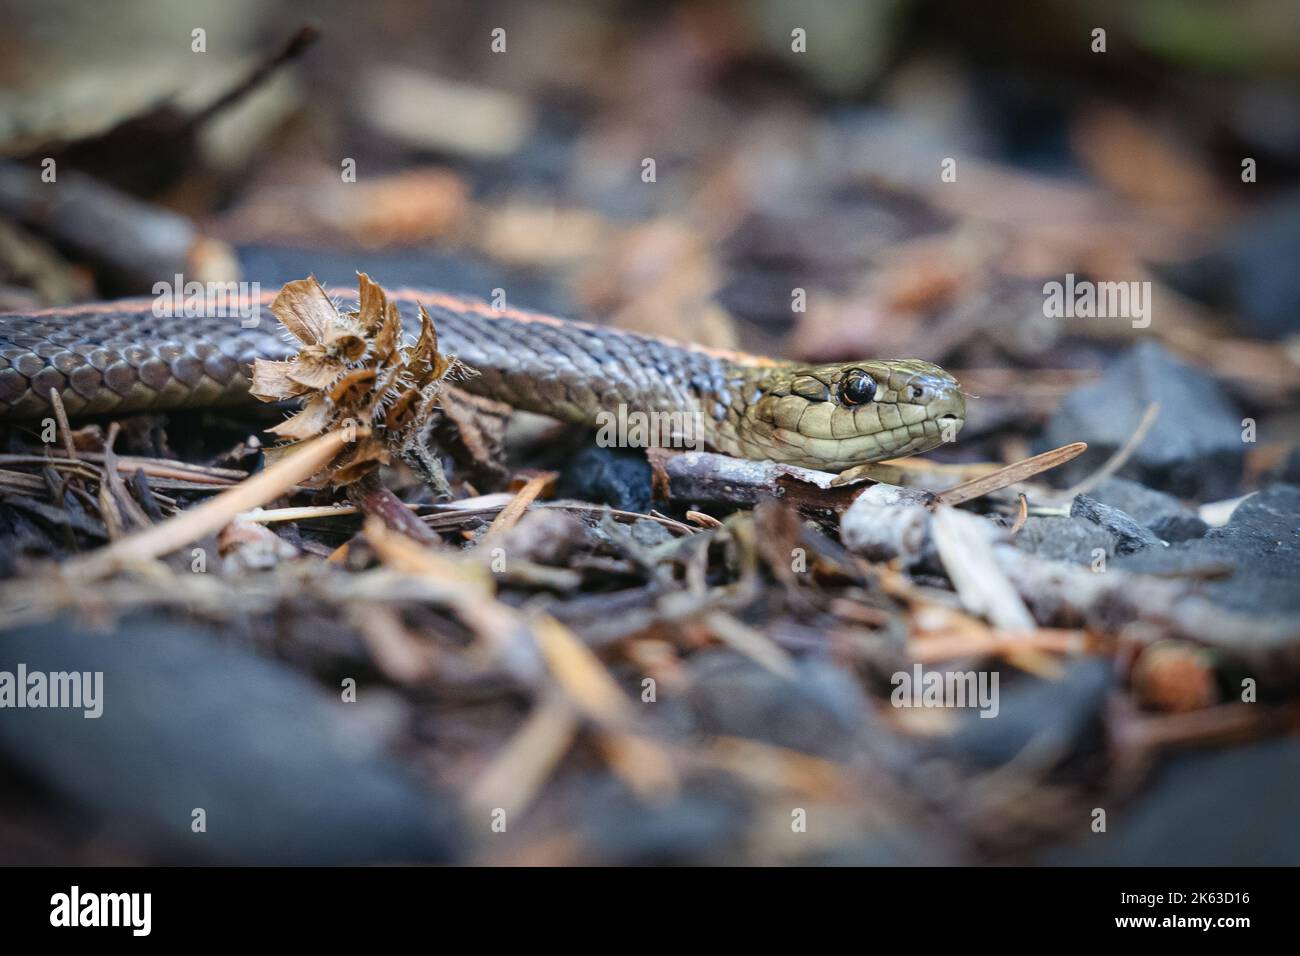 Una serpiente de la liga se desliza a través del suelo del bosque Foto de stock